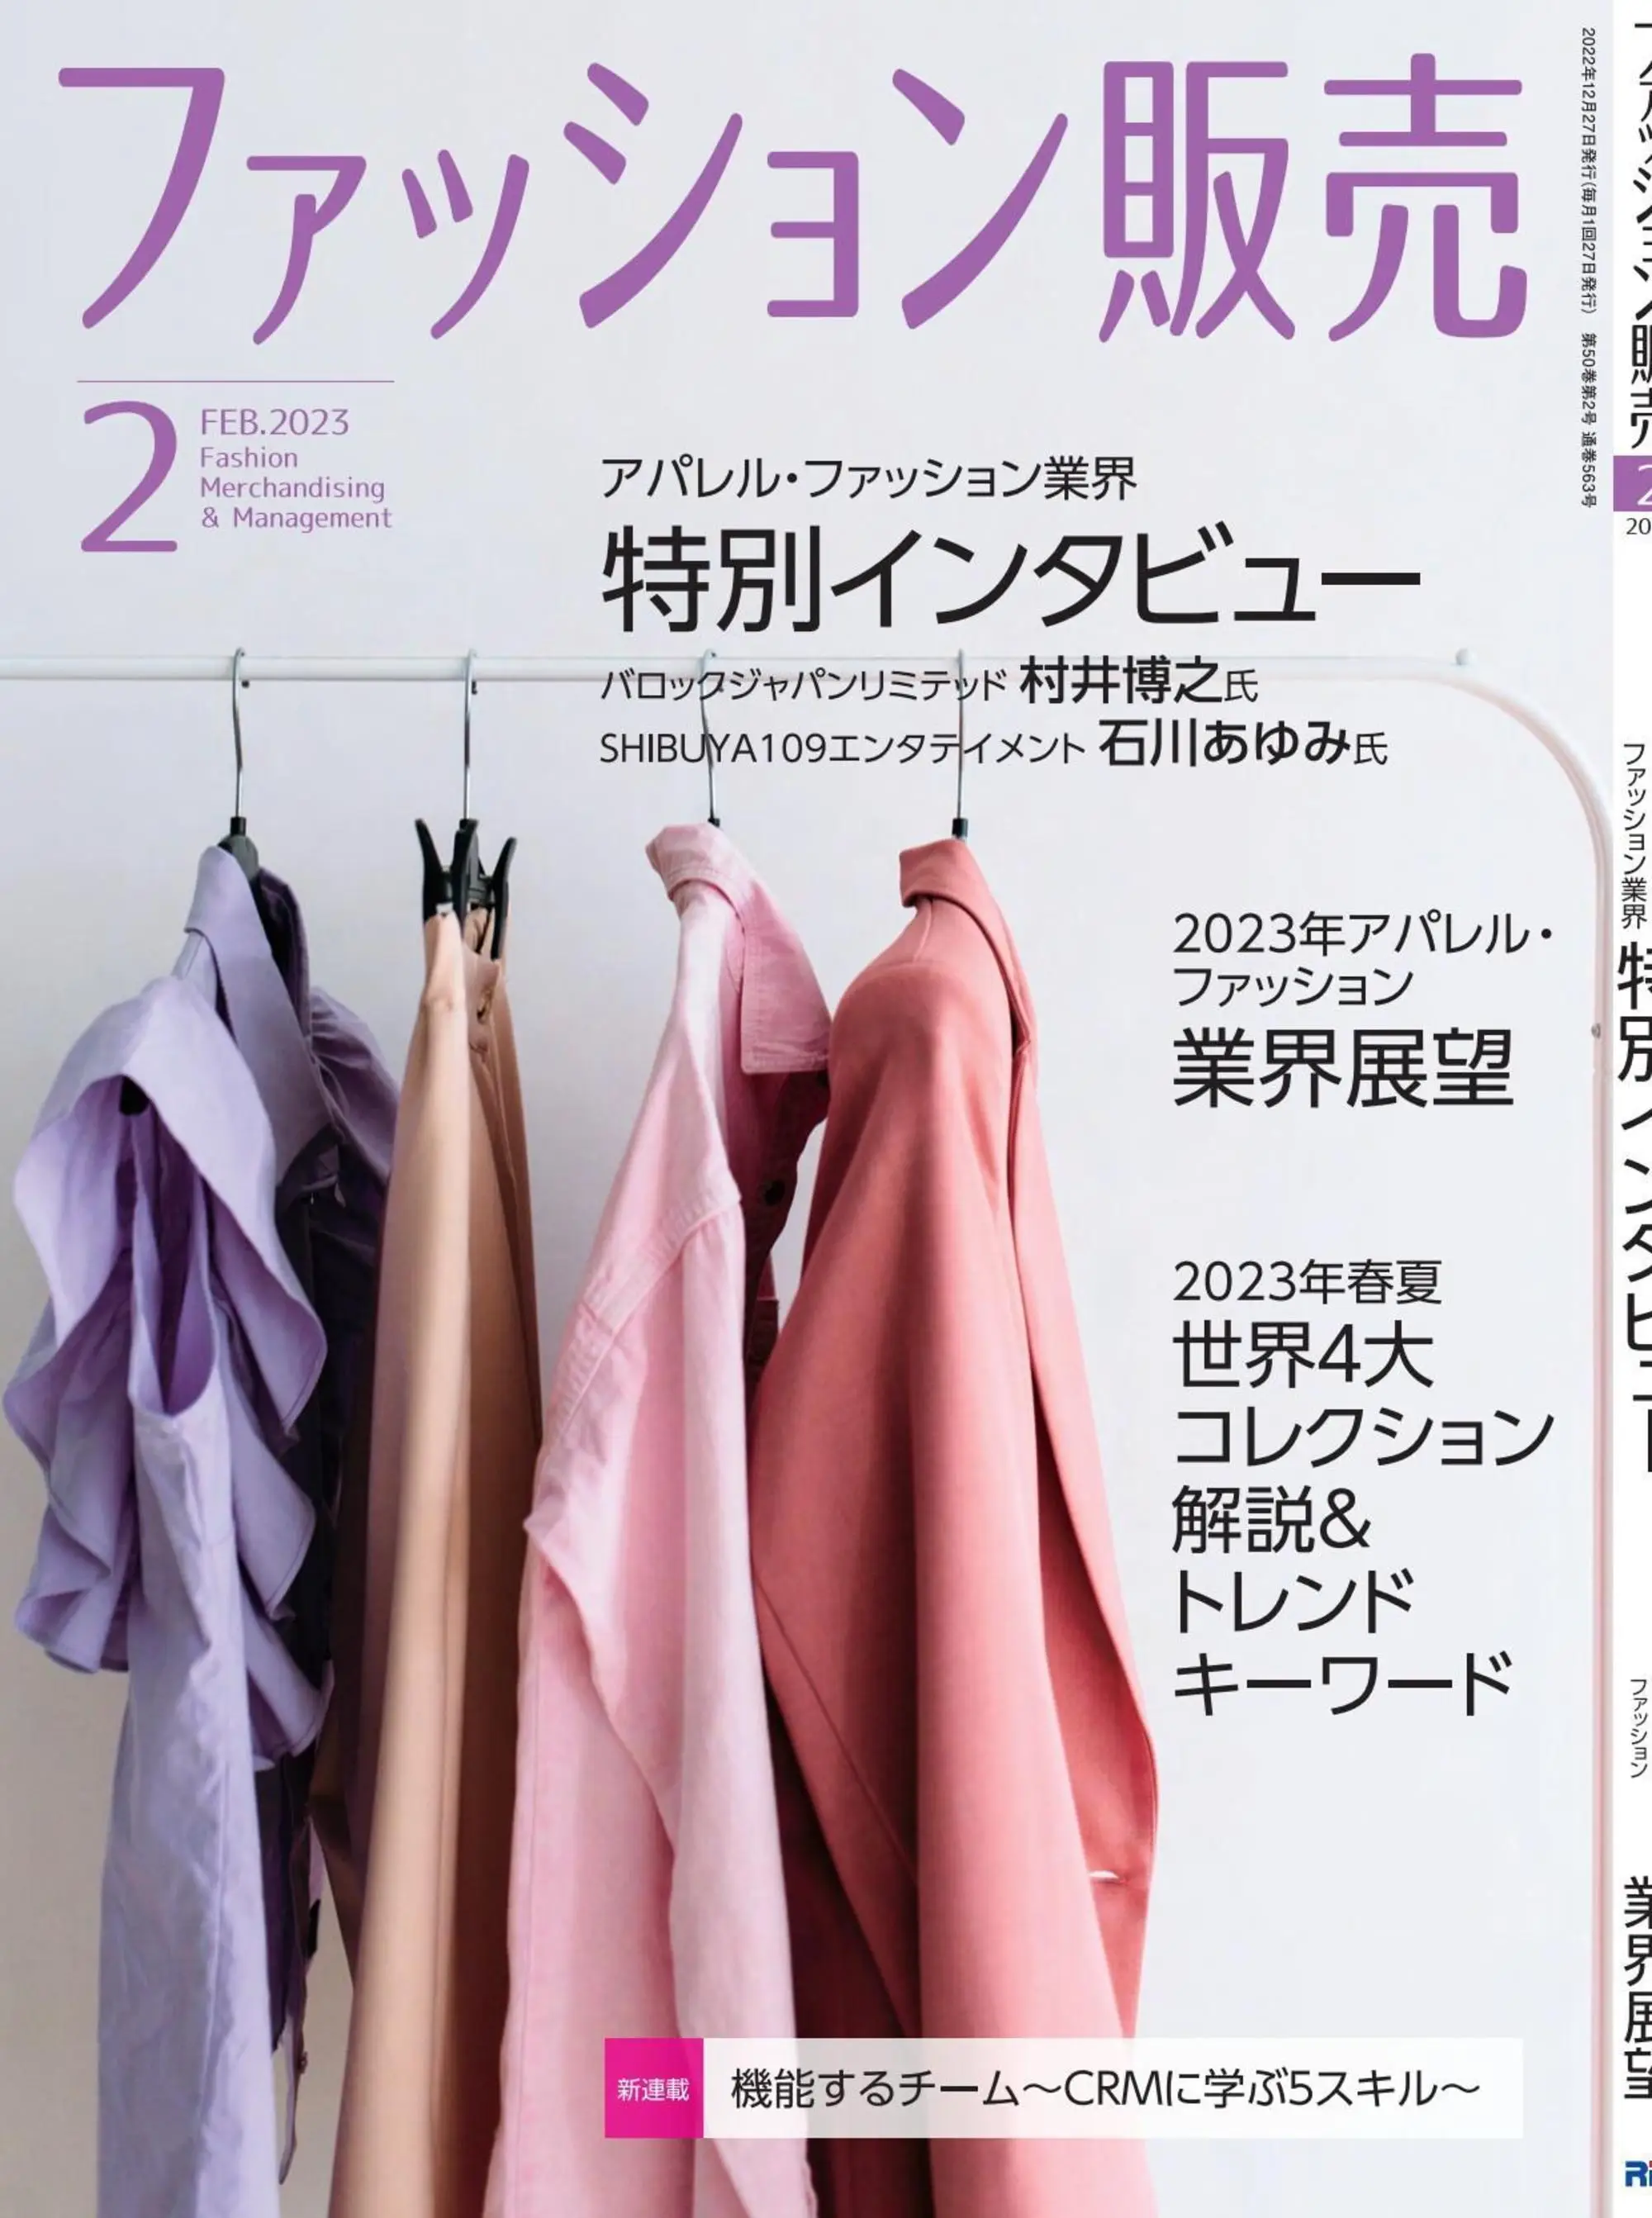 ファッション販売 时装销售商业杂志日文原版2023年2月